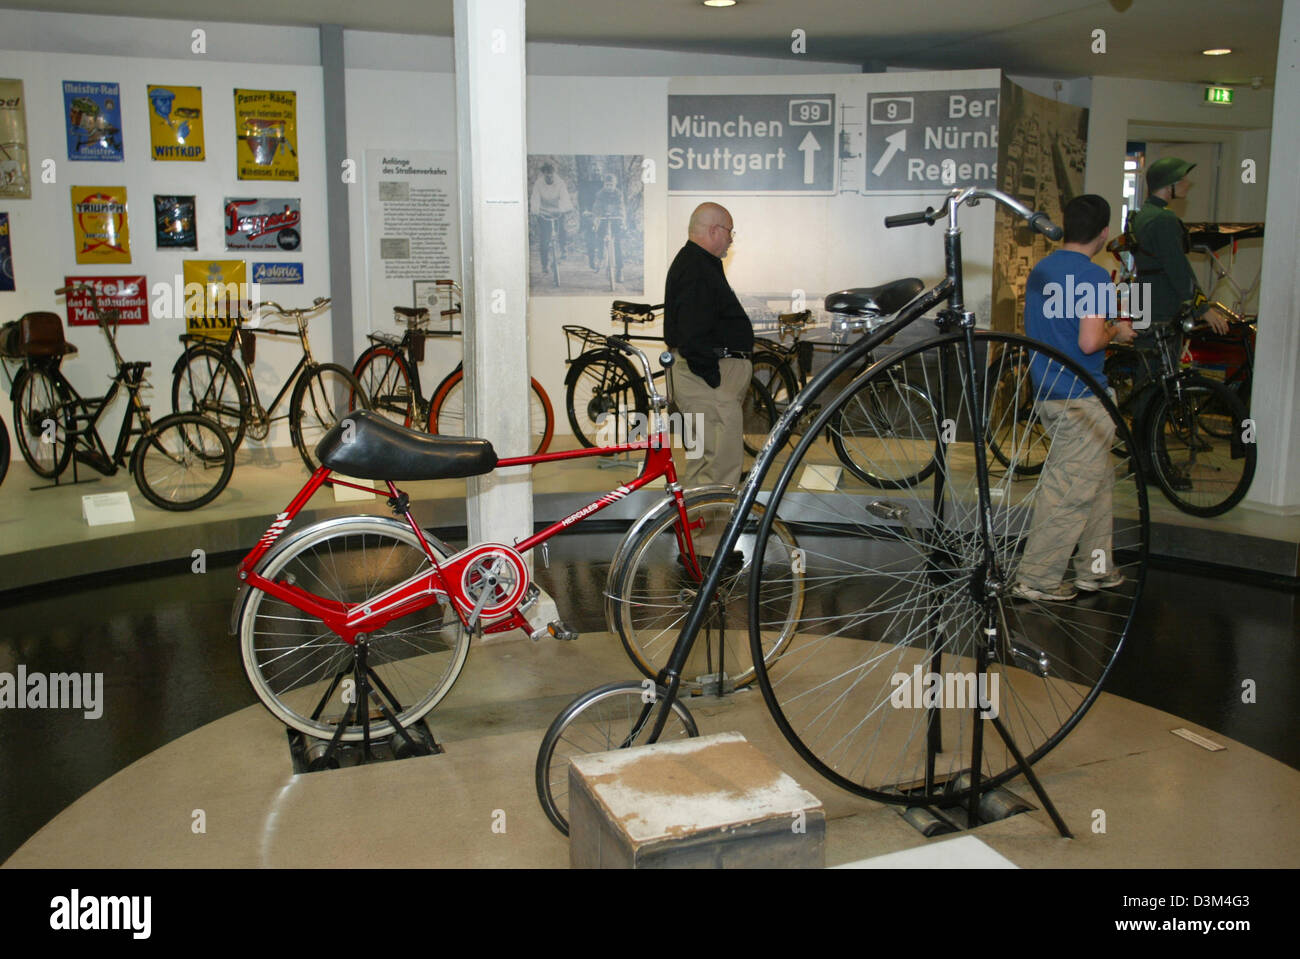 (Dpa) - die Besucher zu Fuß Pass ausgestellt Fahrräder auf das Zweirad Museum, Museum für Zweiräder in Neckarsulm, Deutschland, 7. November 2005. Laut dem Management beherbergt das Museum, das 1956 eröffnet wurde, die größte historische Sammlung von Zweirädern in Deutschland mit rund 400 Exponate. Foto: Harry Melchert Stockfoto